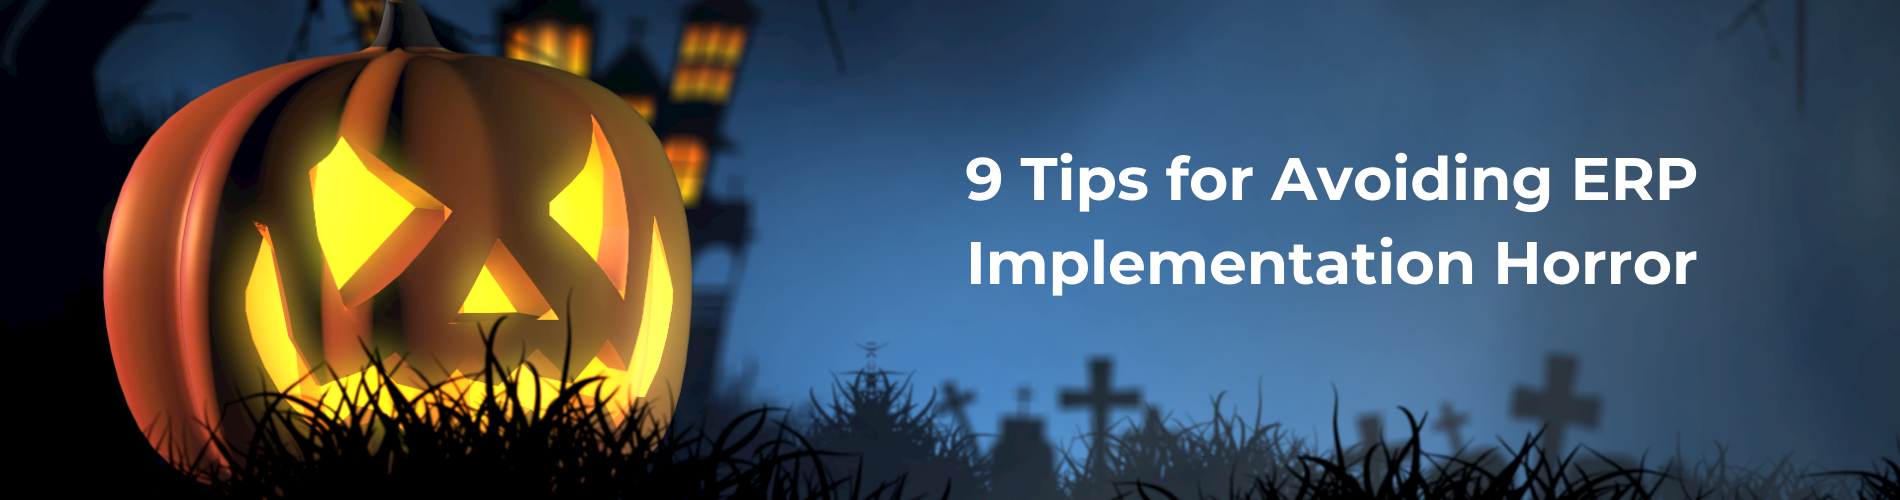 9 tips ERP implementation horror header